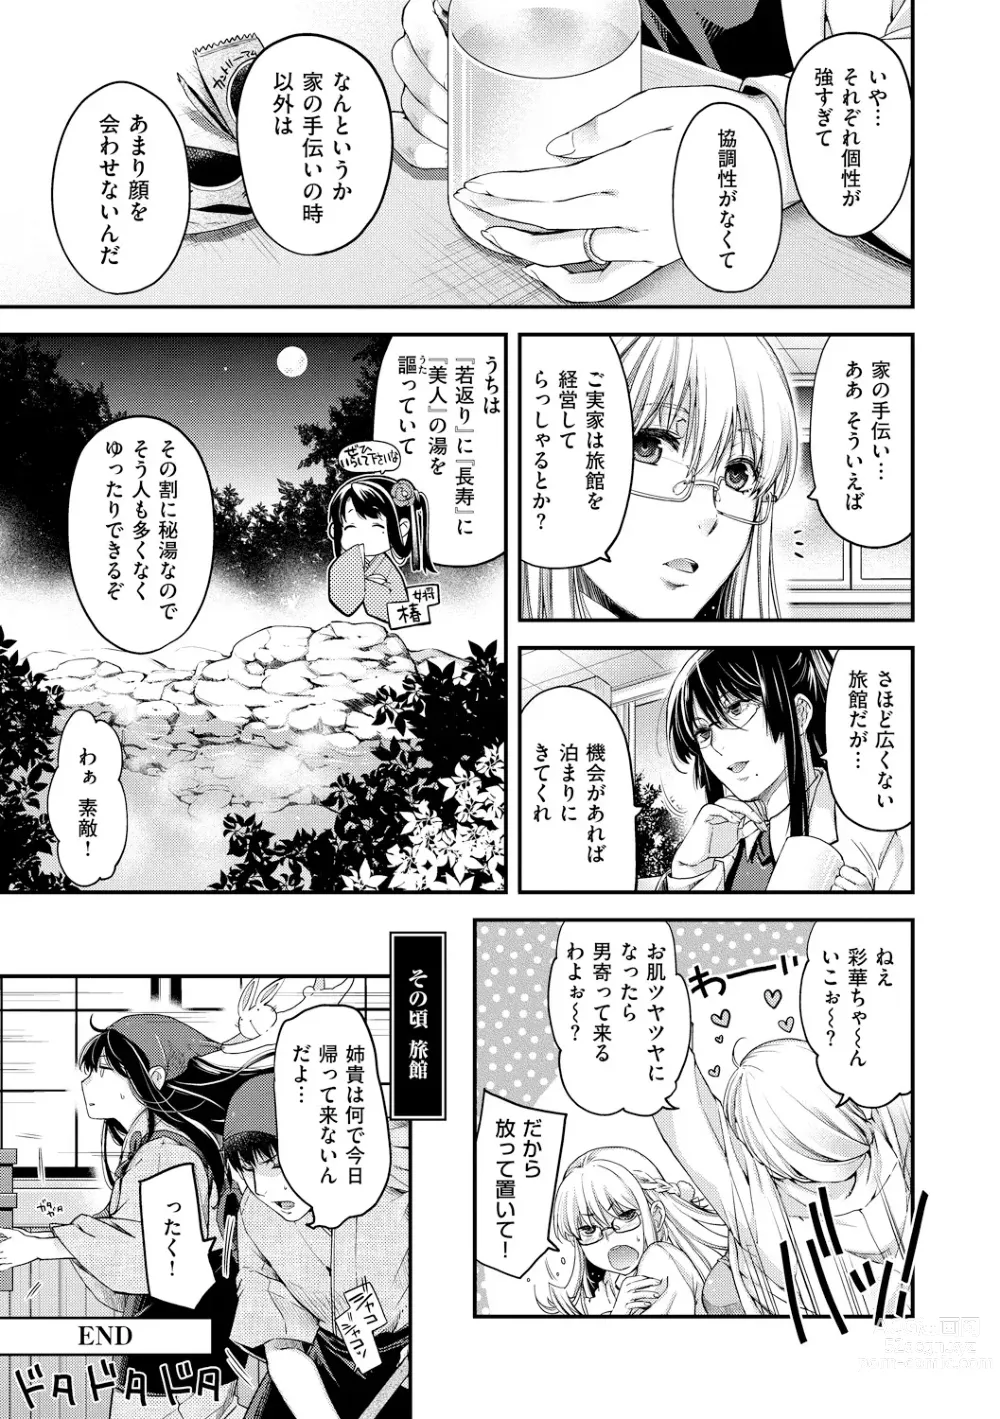 Page 215 of manga Chigiri to Musubi no Houteishiki